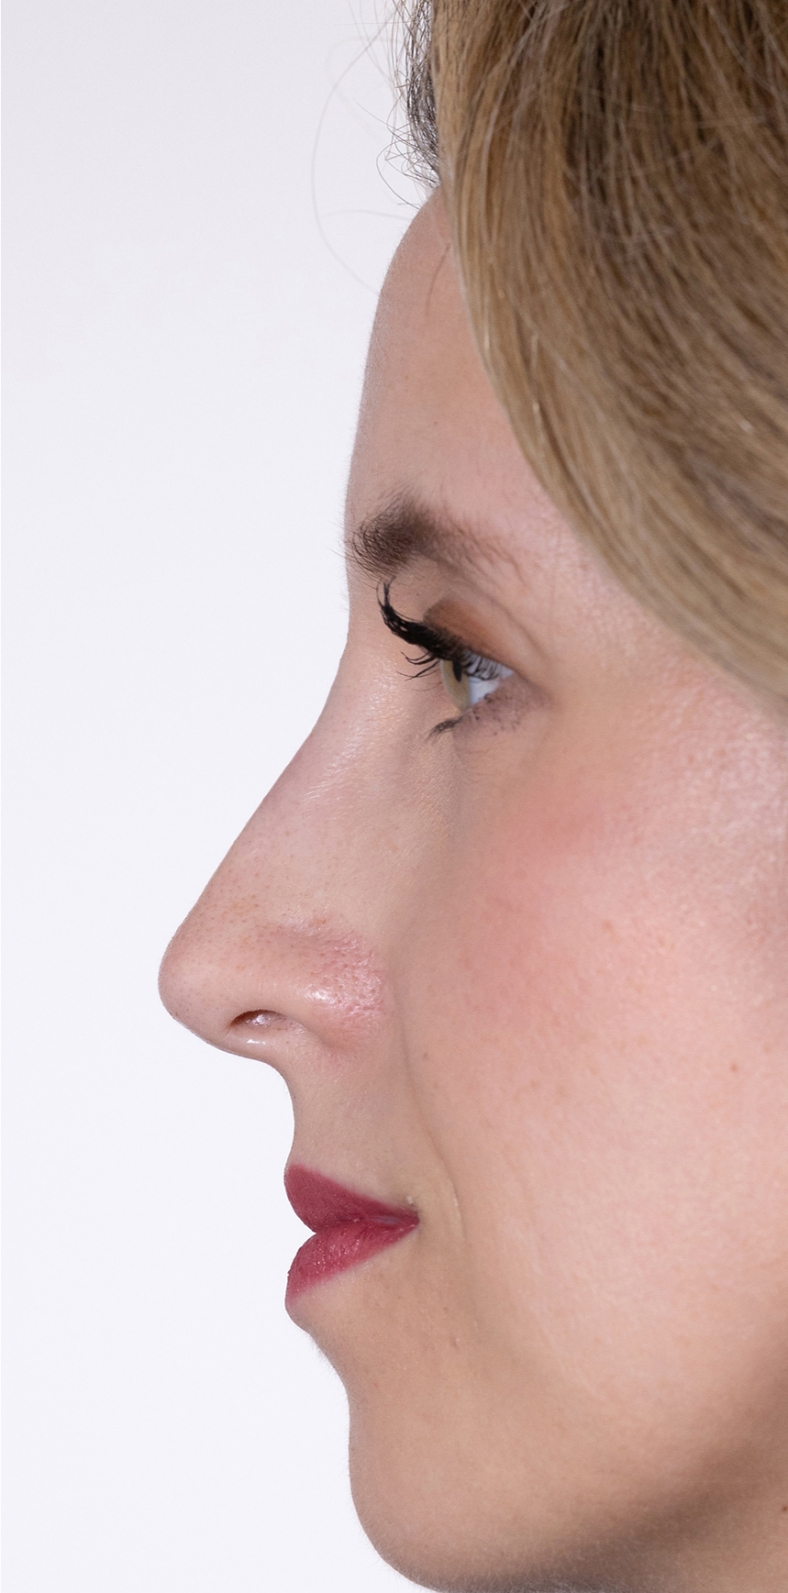 Nekirurška korekcija nosa - poslije, sl. 3 2022